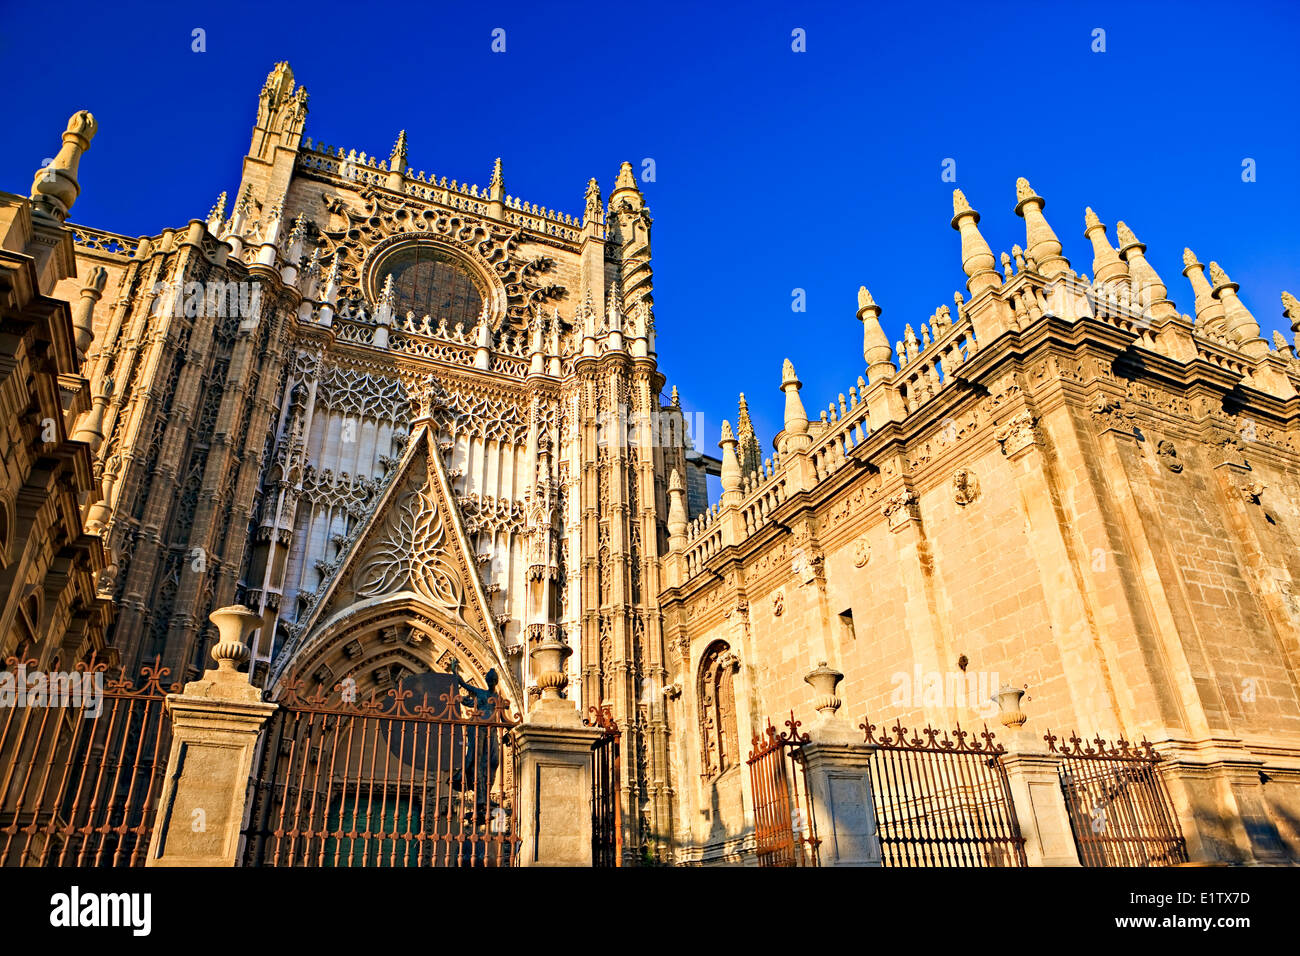 San Crisobal porte à la Cathédrale de Séville Site du patrimoine mondial de l'UNESCO dans le quartier de Santa Cruz Ville Sevilla (Séville) Banque D'Images